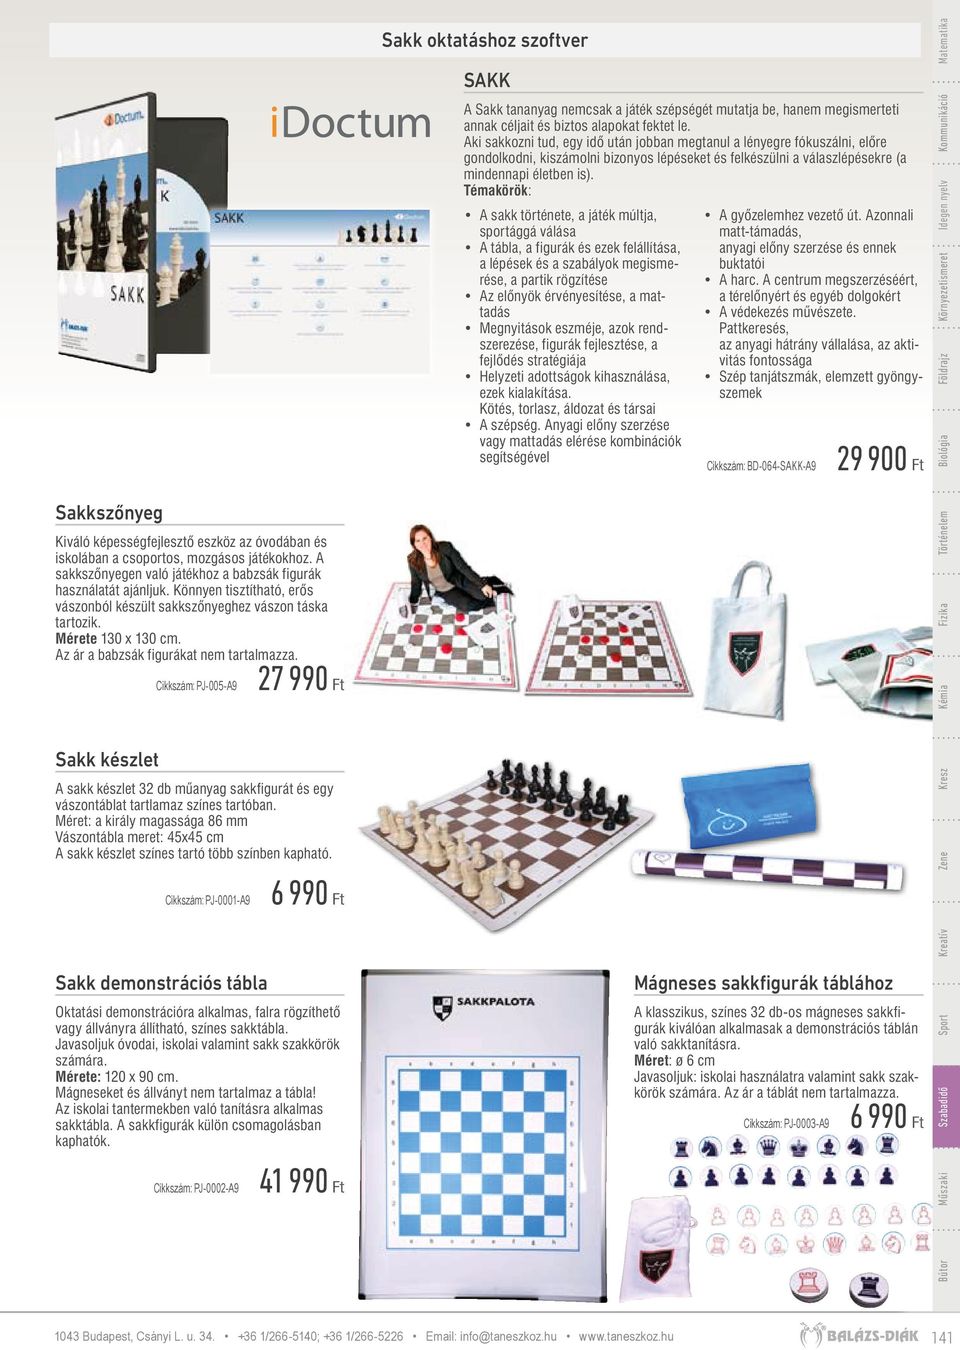 Sakk készlet Cikkszám: PJ-005-A9 27 990 Ft A sakk készlet 32 db műanyag sakkfigurát és egy vászontáblat tartlamaz színes tartóban.